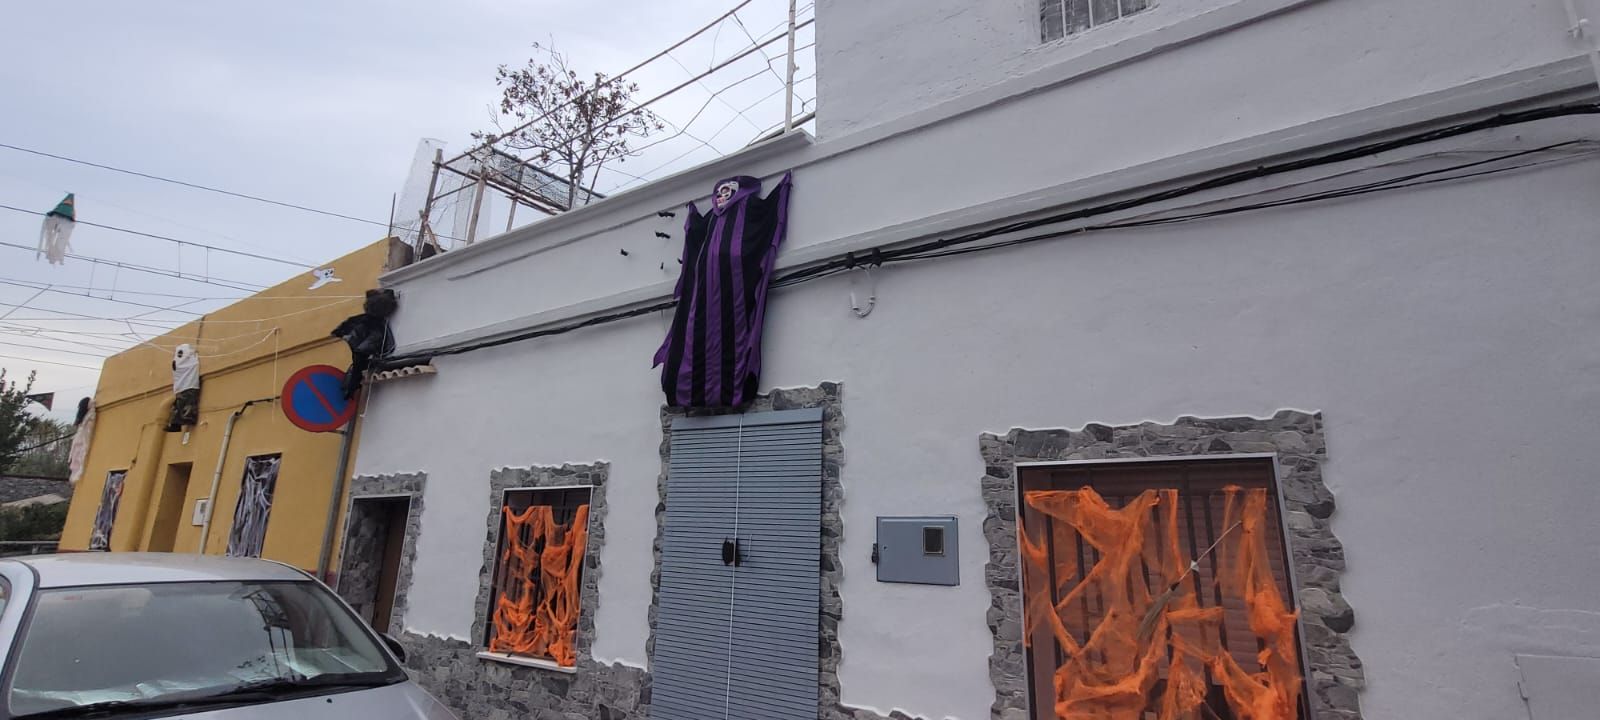 Así han decorado sus casas los vecinos del Grupo Lourdes de Castelló por Halloween